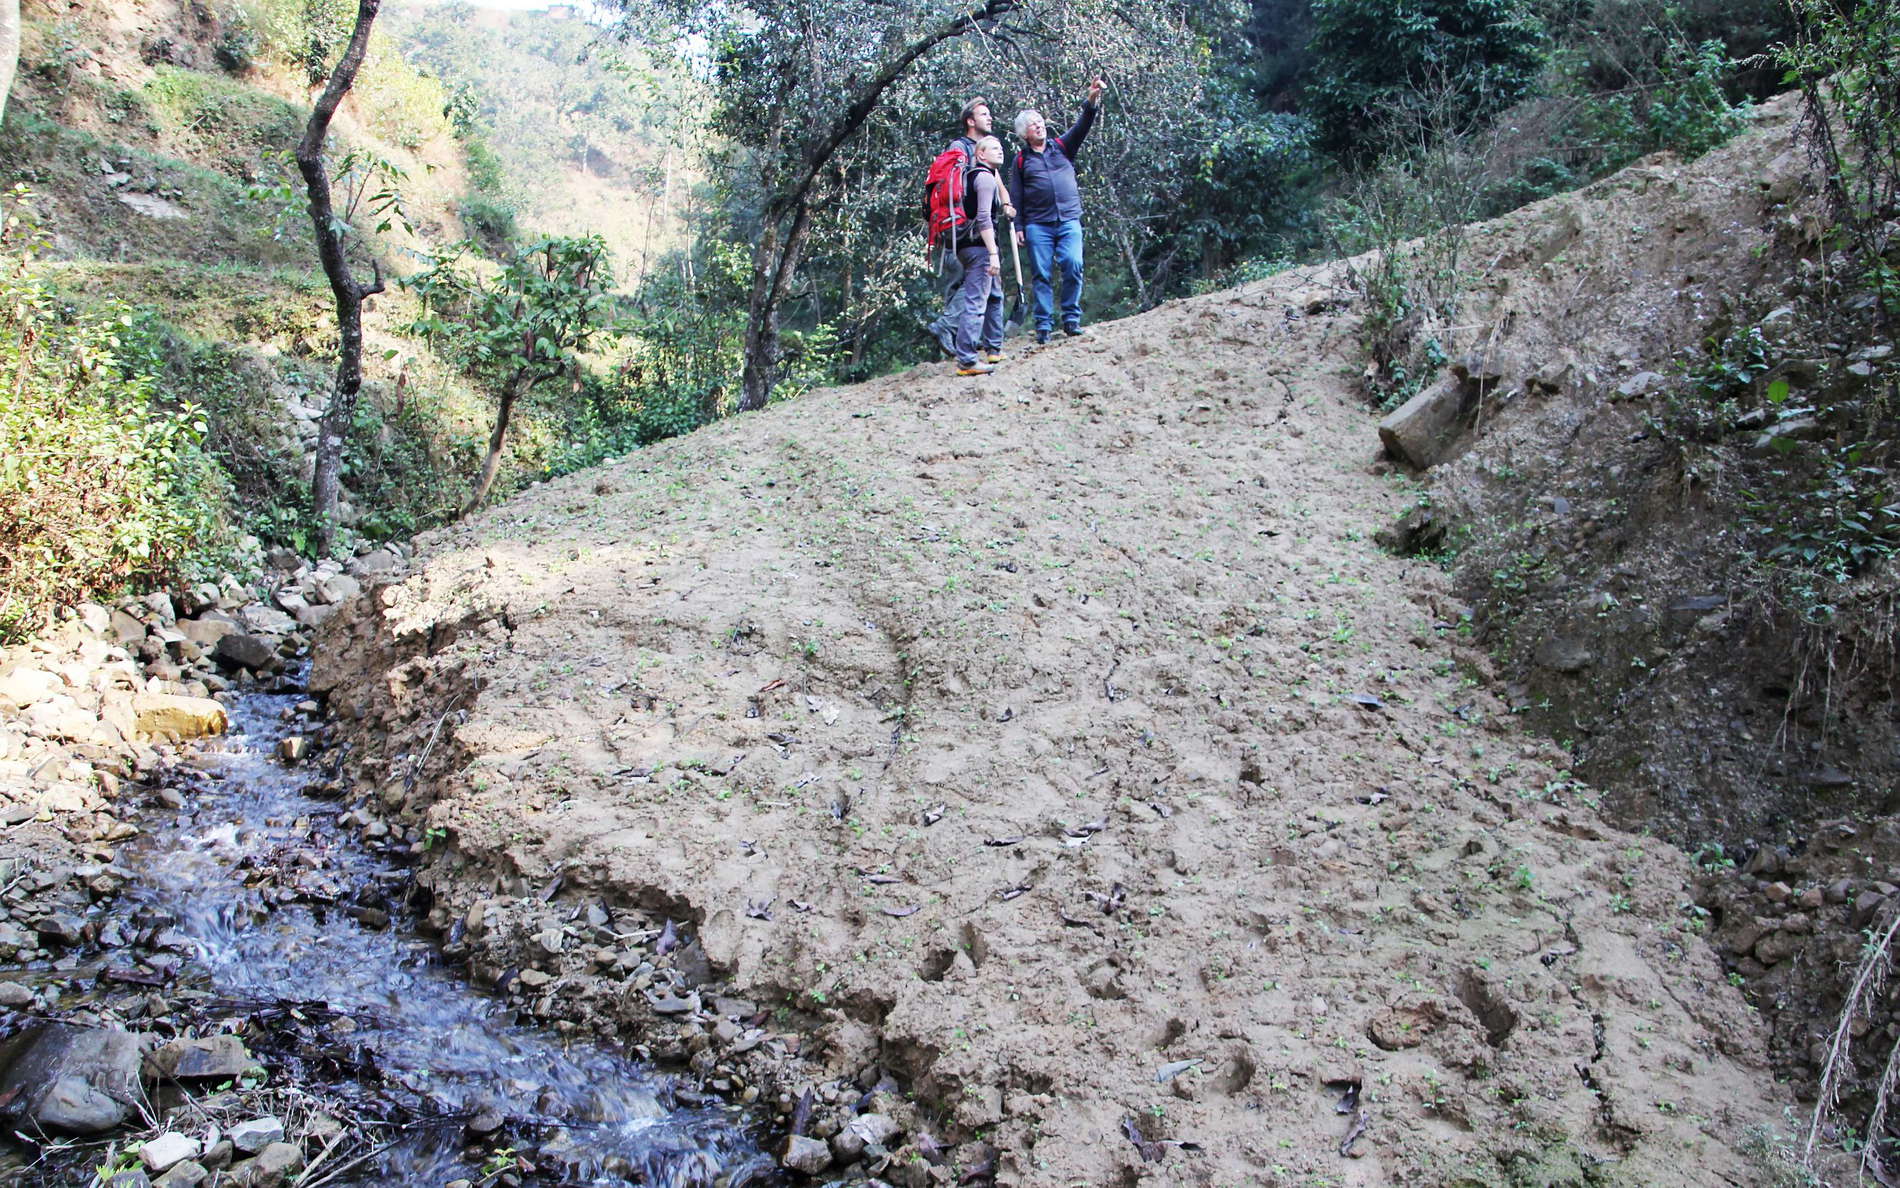 Lesser Himalaya  |  Debris flow deposit